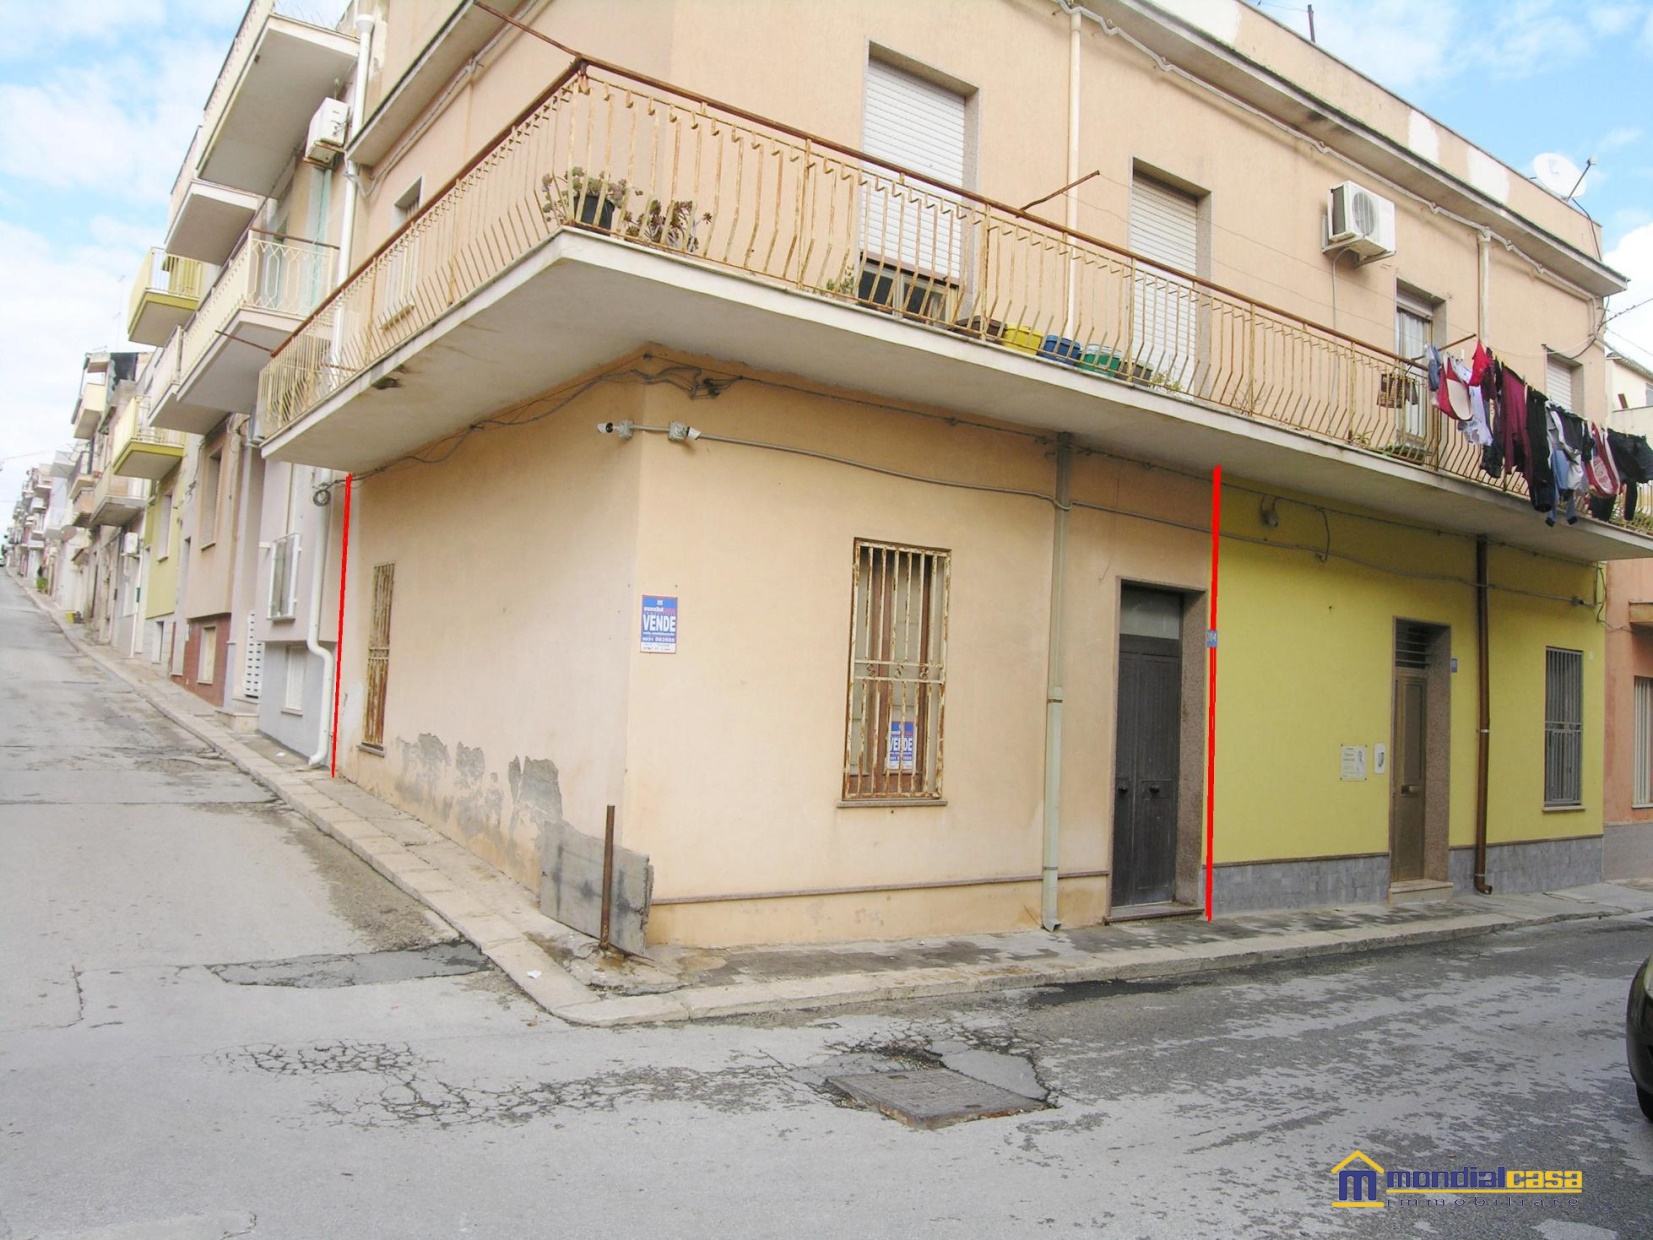 Appartamento in vendita a Pachino, 3 locali, prezzo € 19.000 | PortaleAgenzieImmobiliari.it